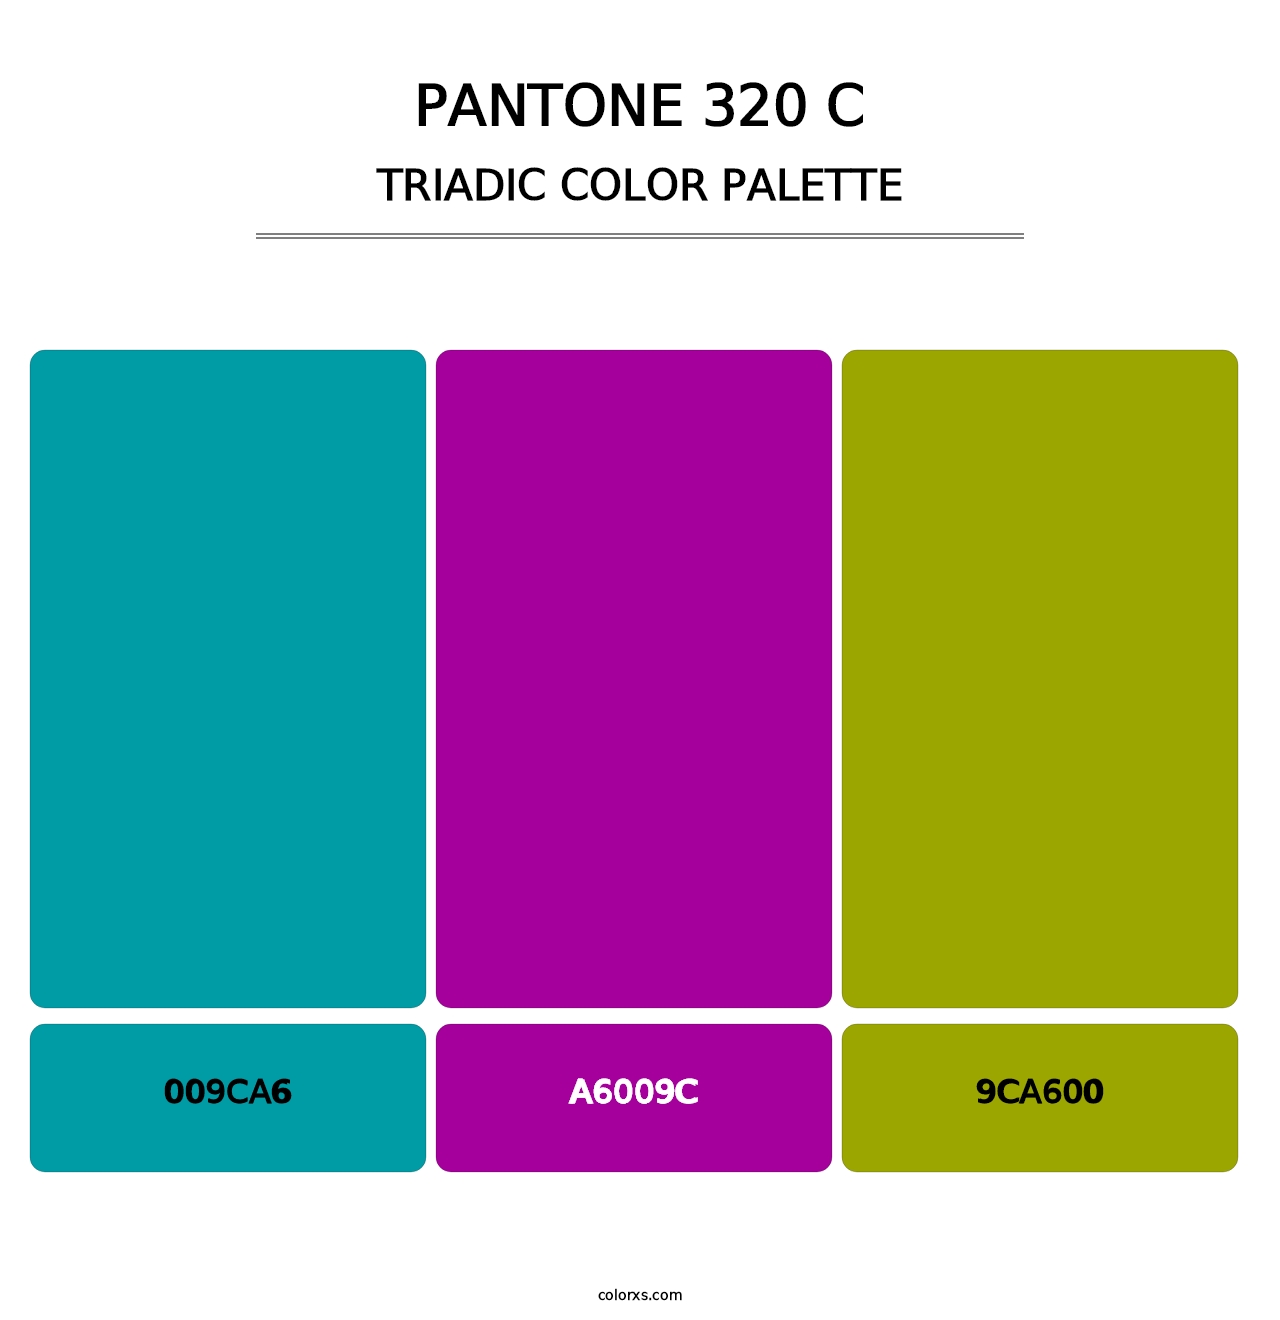 PANTONE 320 C - Triadic Color Palette